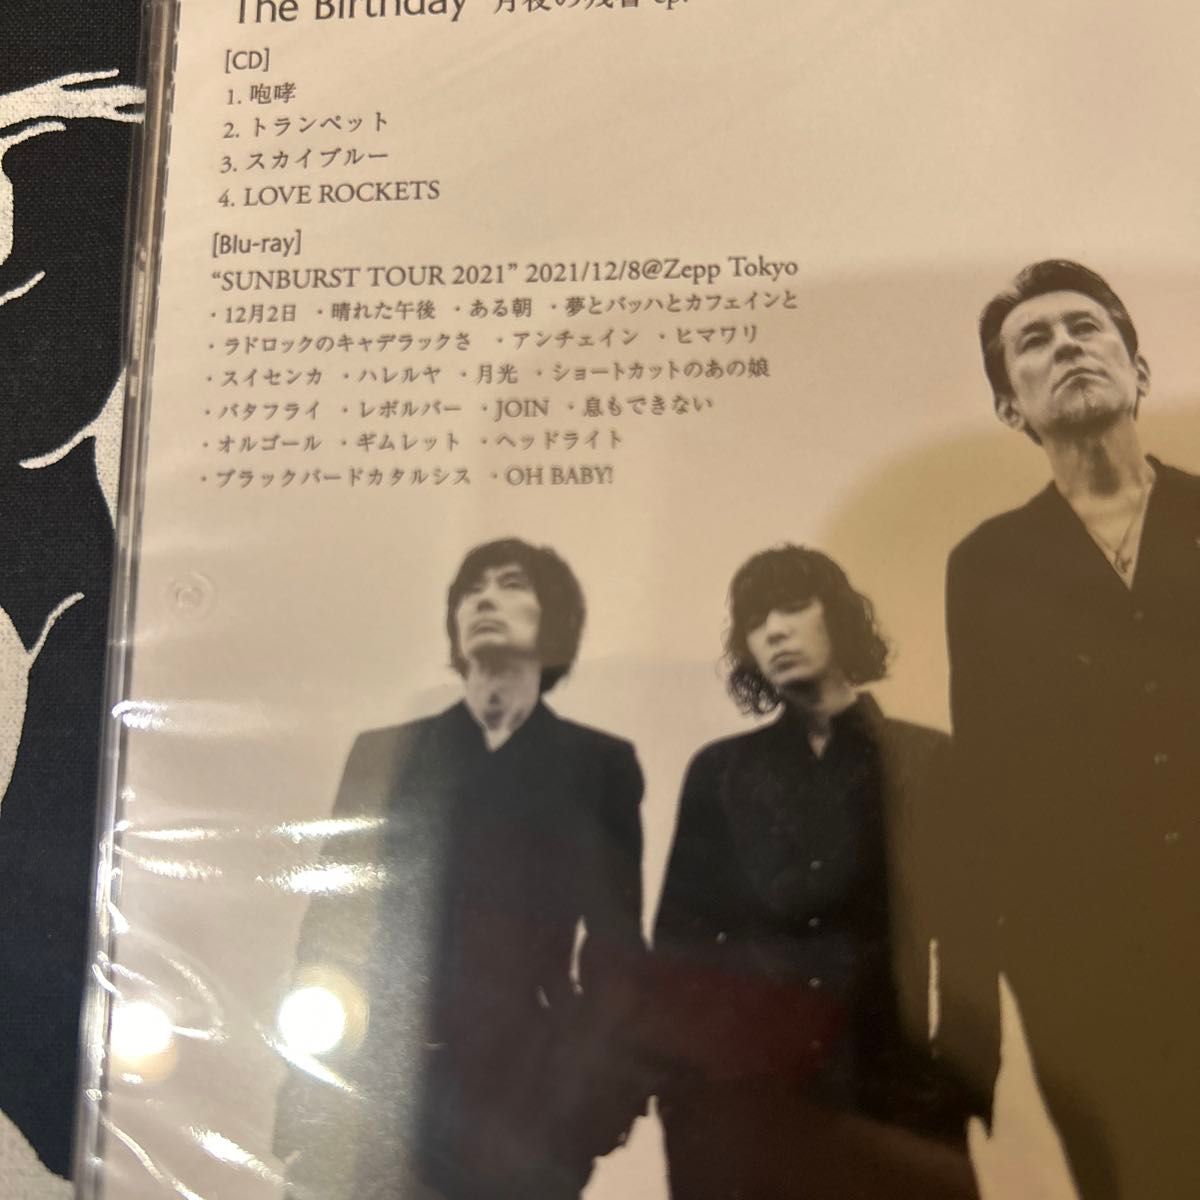 [国内盤CD] The Birthday/月夜の残響 ep. [CD+BD] [2枚組] [初回出荷限定盤 (初回限定盤)]